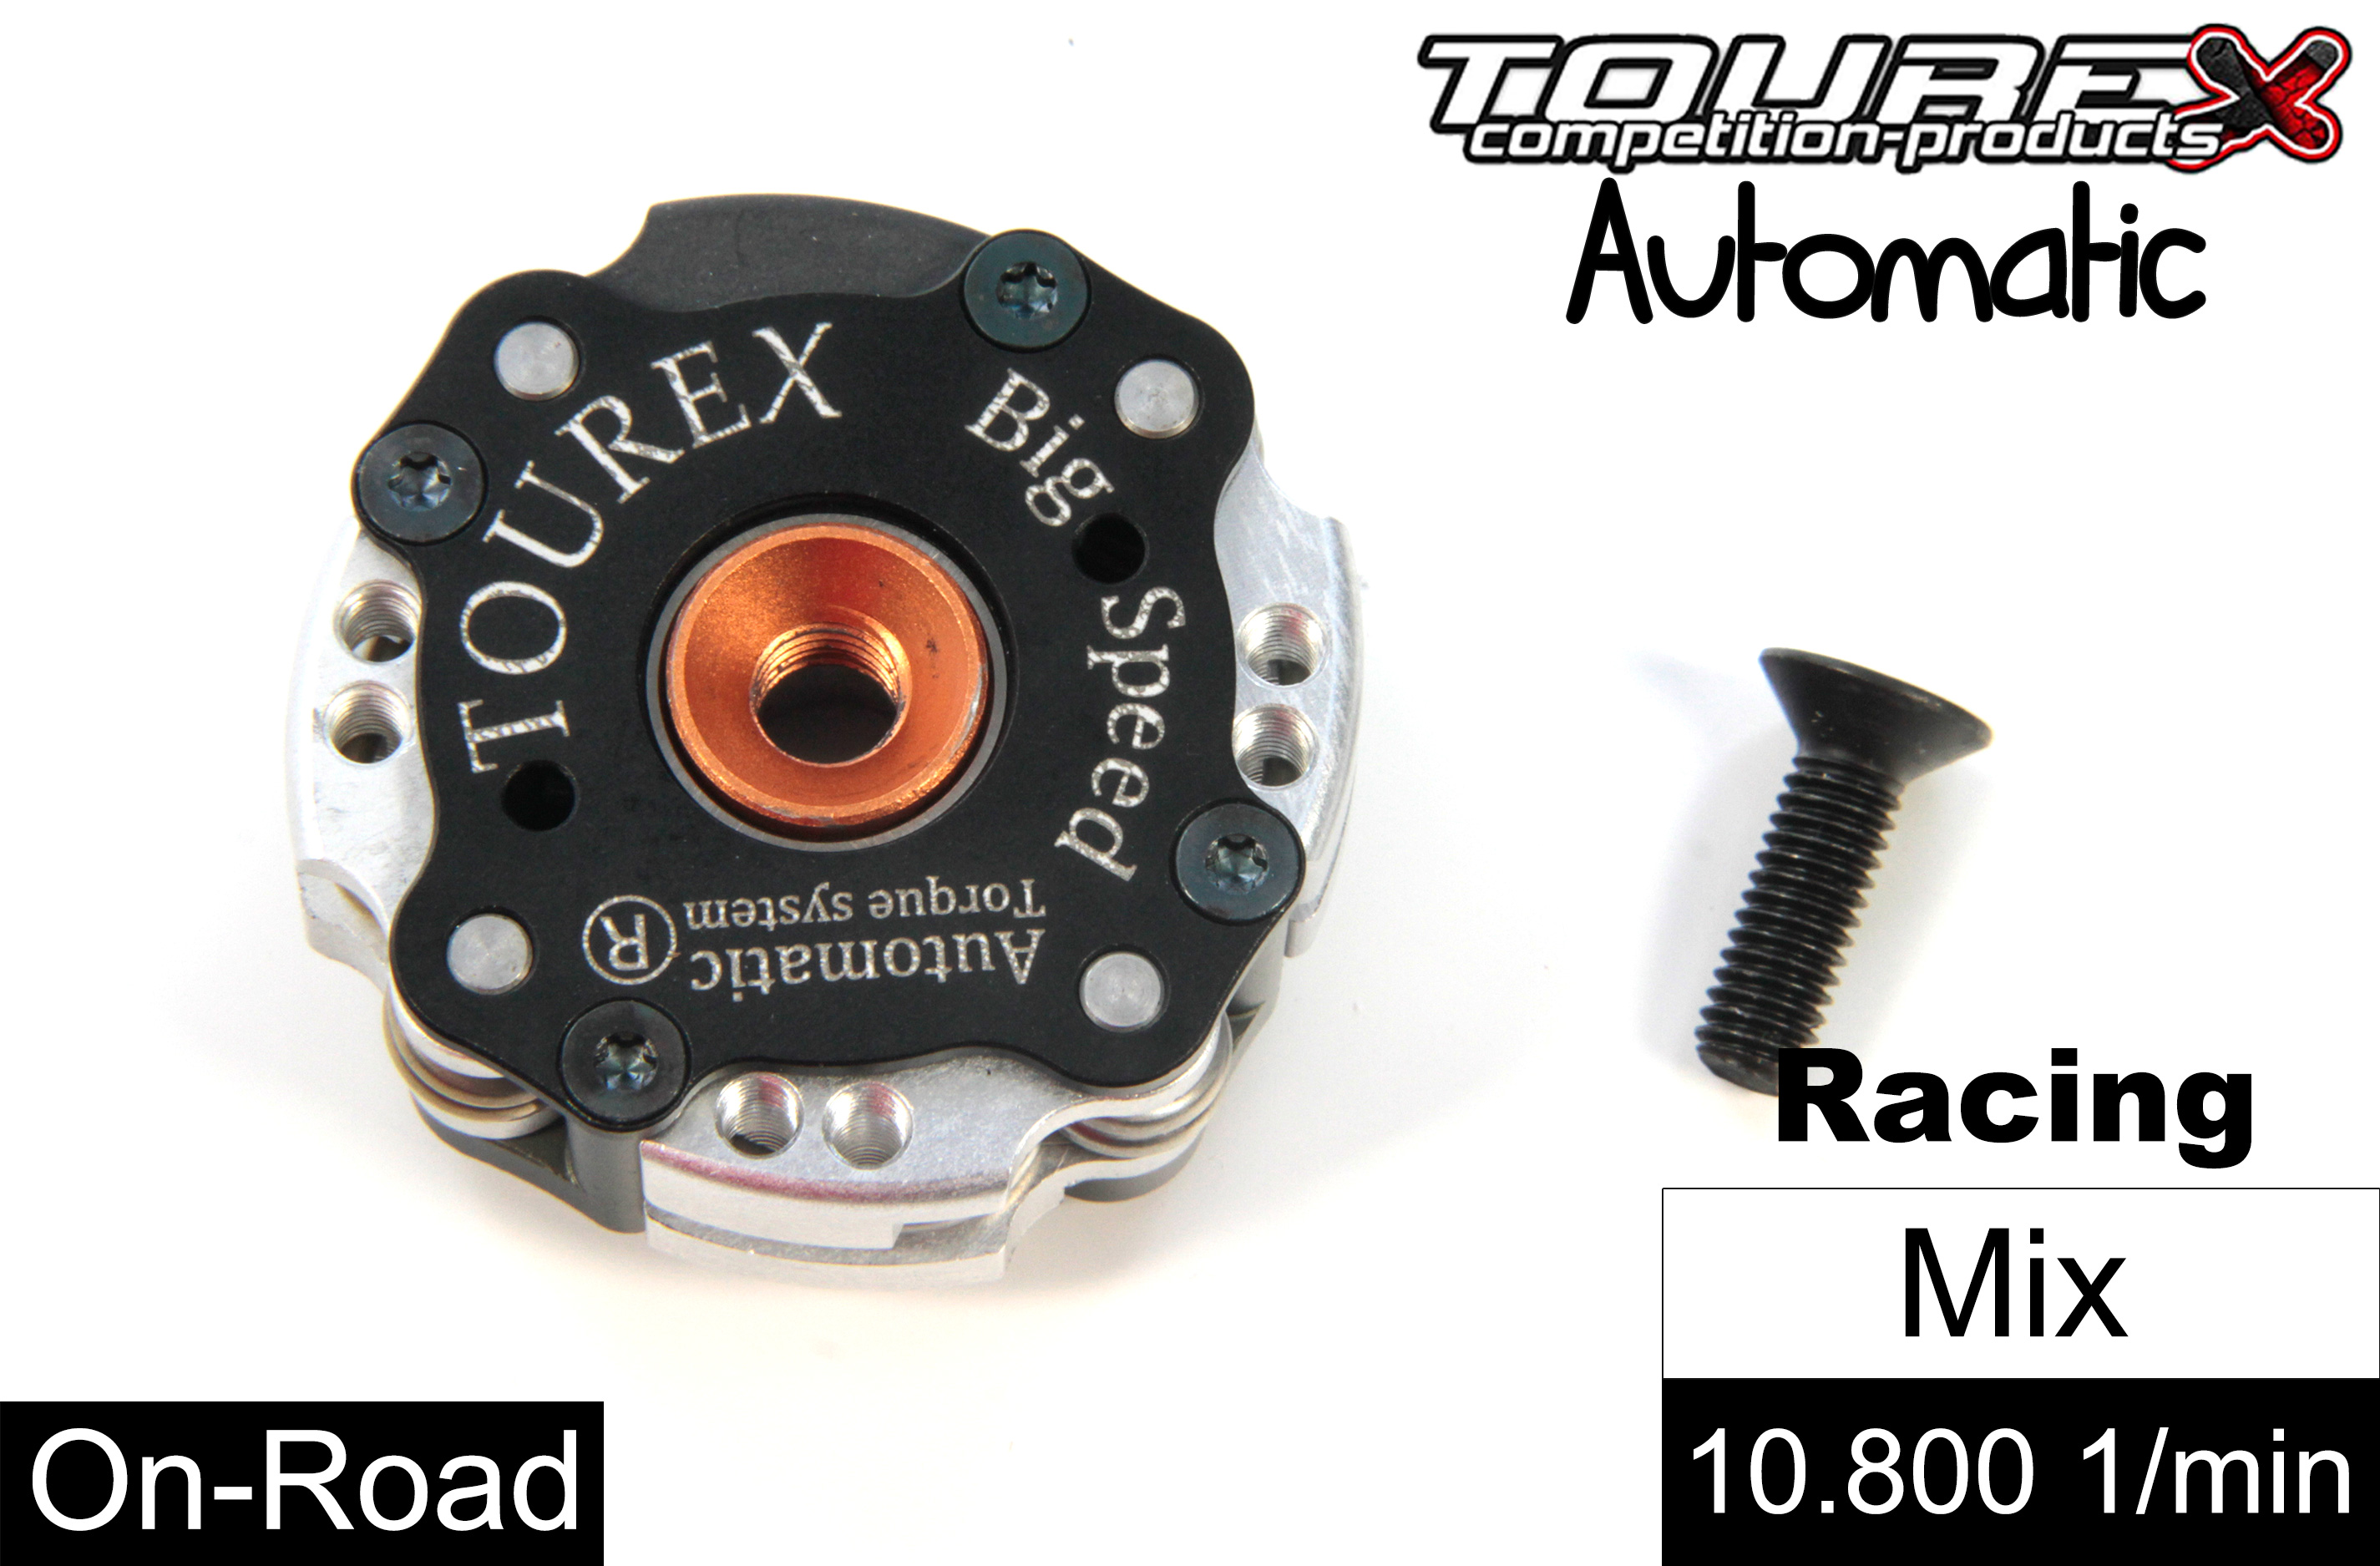 TXLA-910-MIX Tourex Big-Speed Automatic für FG/HPI/Losi/Smartech und viele mehr